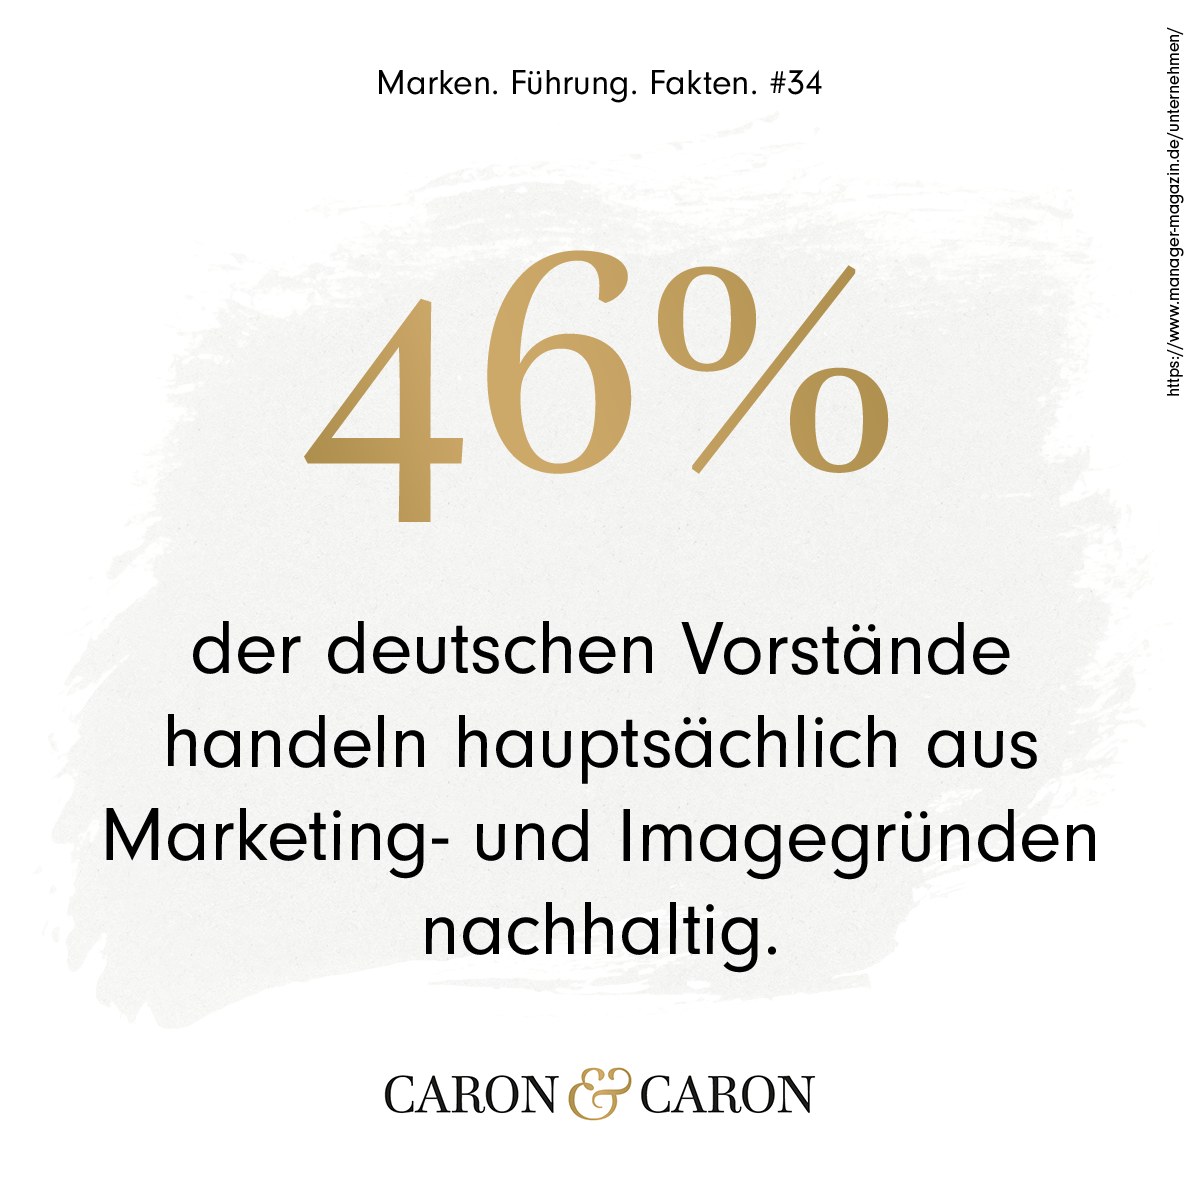 46 Prozent der deutschen Vorstände handeln hauptsächlich aus Marketing- und Imagegründen nachhaltig